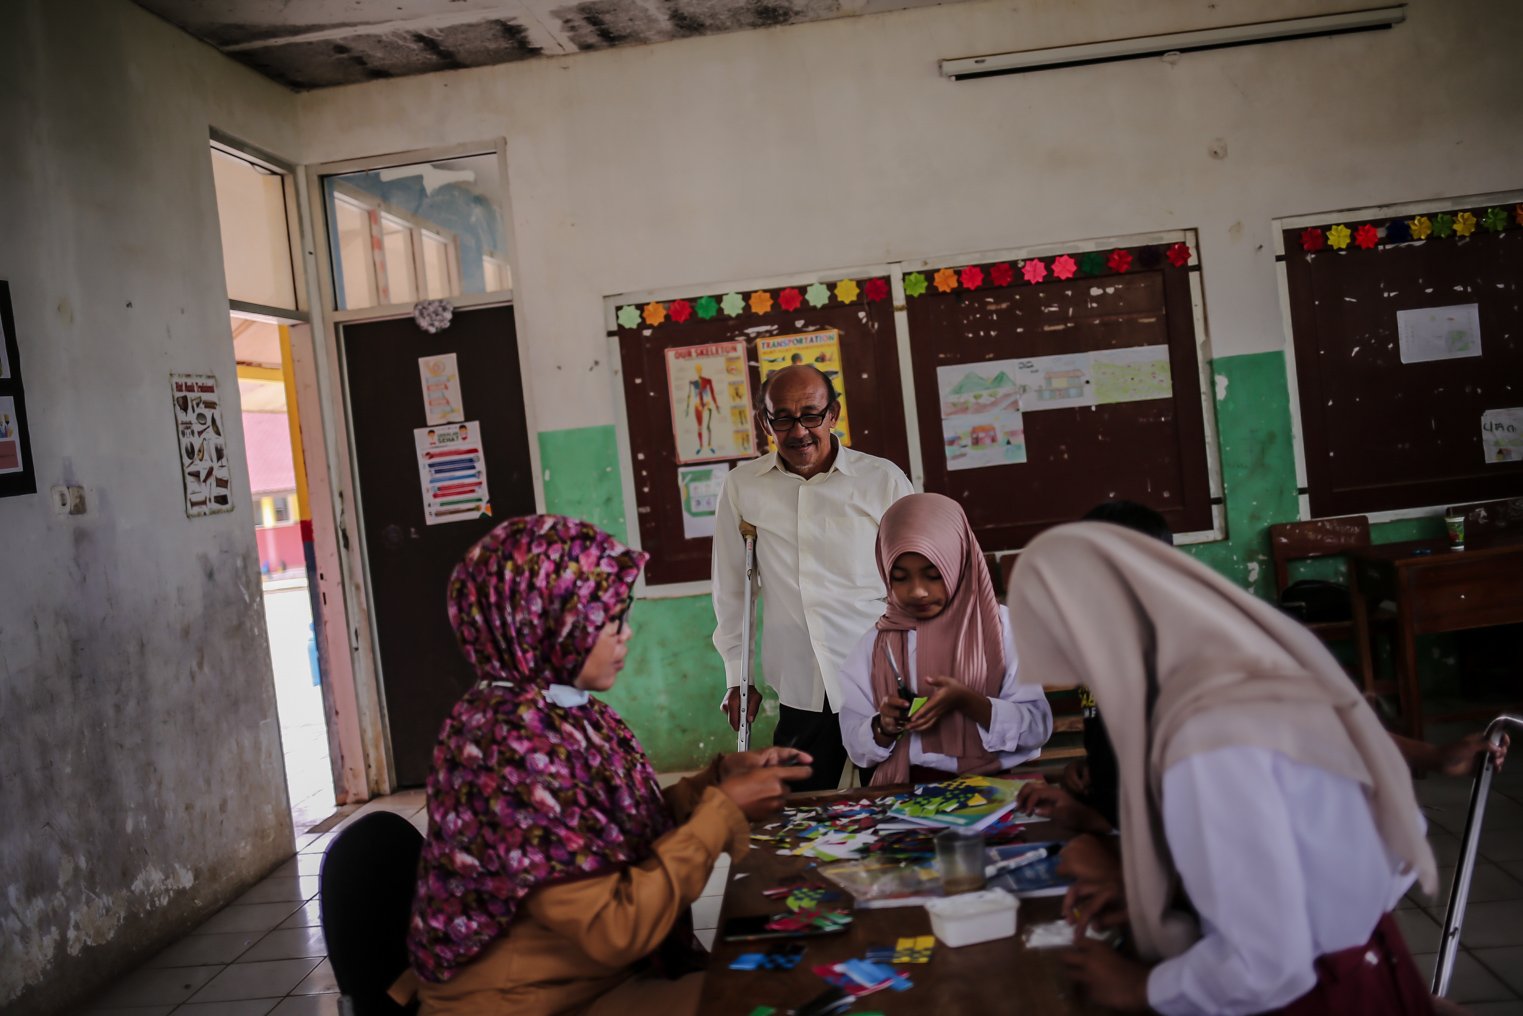 Sejumlah murid dan guru mengikuti kegiatan belajar mengajar di SDN Cikoneng, Desa Tugu Utara, Kecamatan Cisarua, Bogor, Jawa Barat, Rabu (24/11/2021). Sekolah dasar yang berada di kampung Cikoneng ini menjadi titik temu tiga kampung yaitu Cibulao, Rawa Gede, dan Cikoneng. 